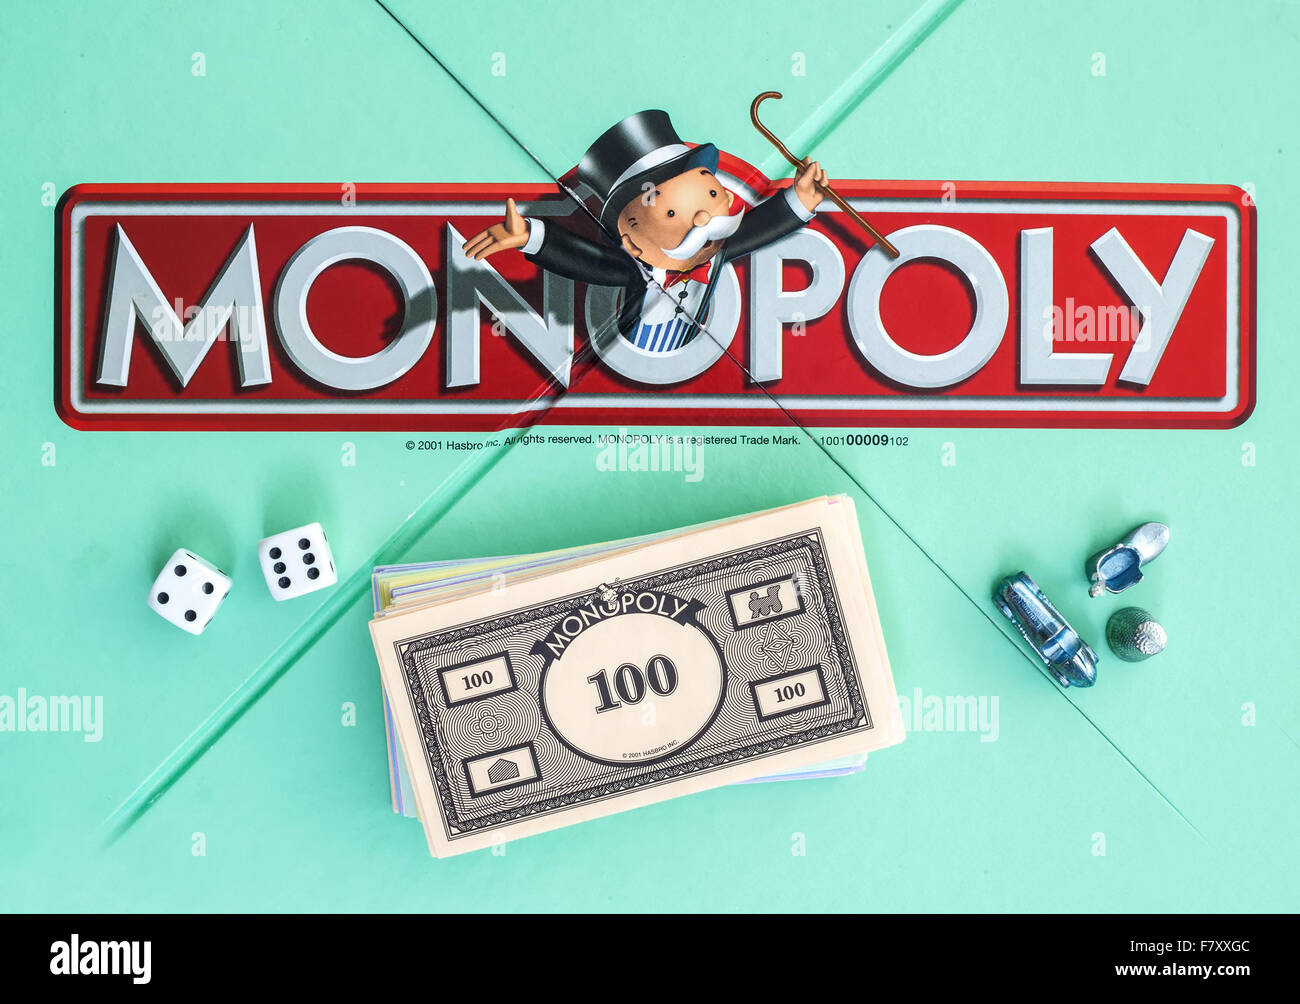 Edizione in lingua inglese di monopolio che mostra il logo, il classico gioco di scambi commerciali dalla Hasbro è stato introdotto per la prima volta in America nel 1935. Foto Stock